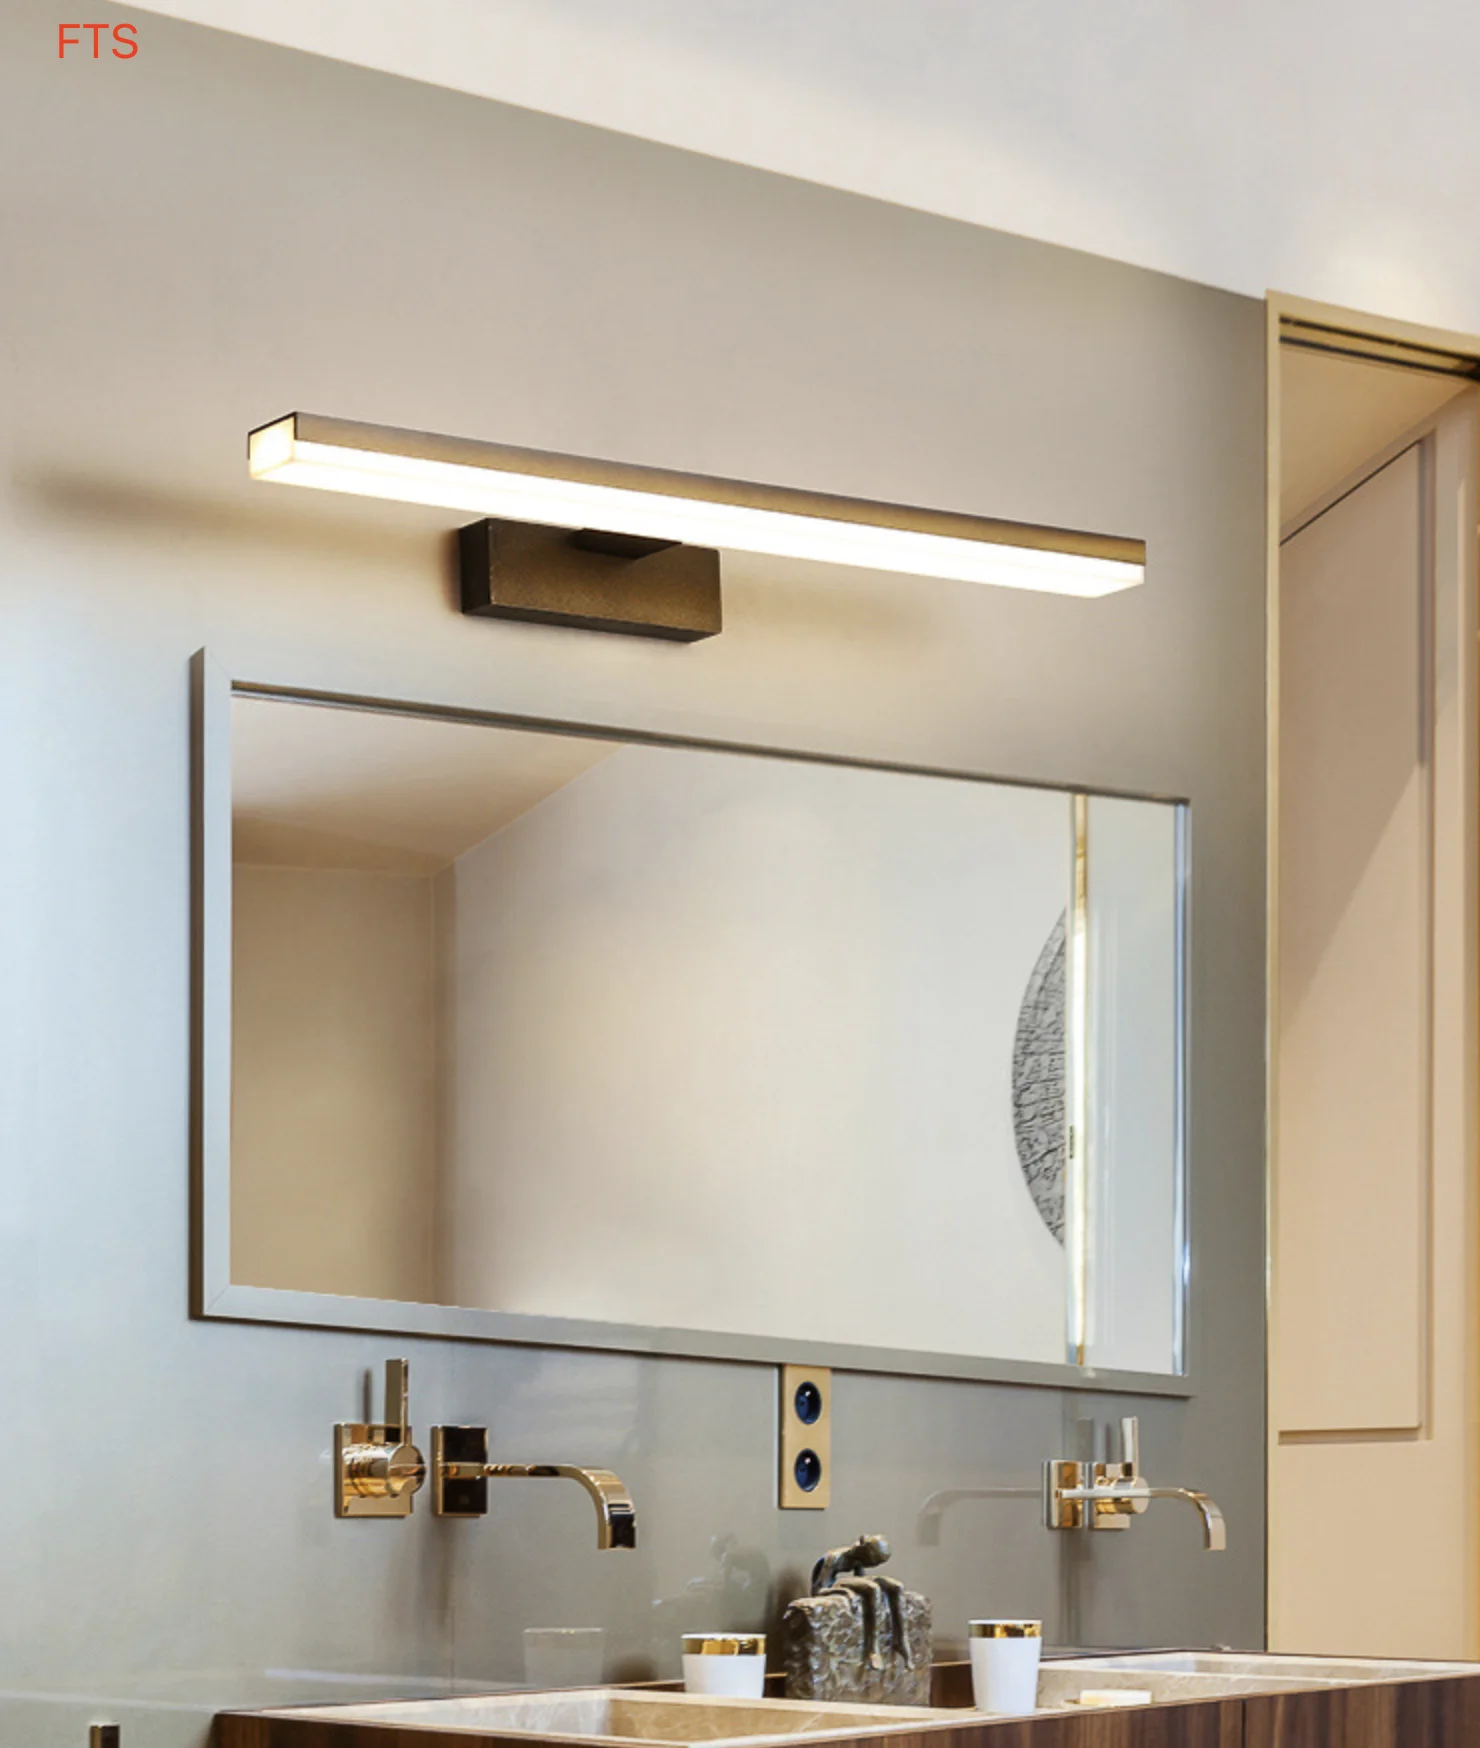 

Зеркальная лампа светодиодный Ретро алюминиевая акриловая ванная комната санитарная зеркальная лампа для шкафа Фреска противотуманная зе...